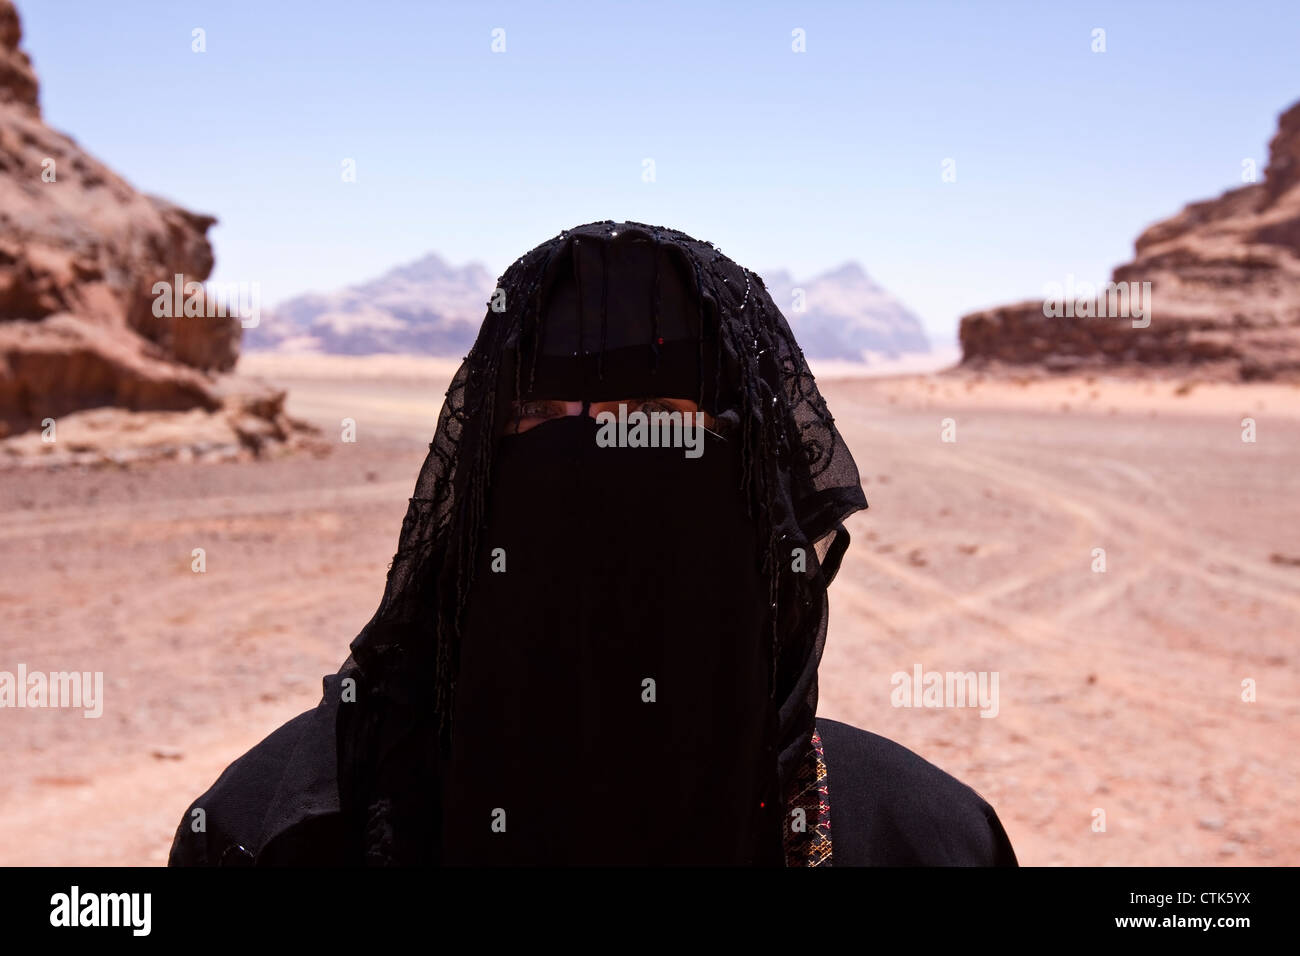 Portrait de femme bédouine avec burqa in desert Banque D'Images